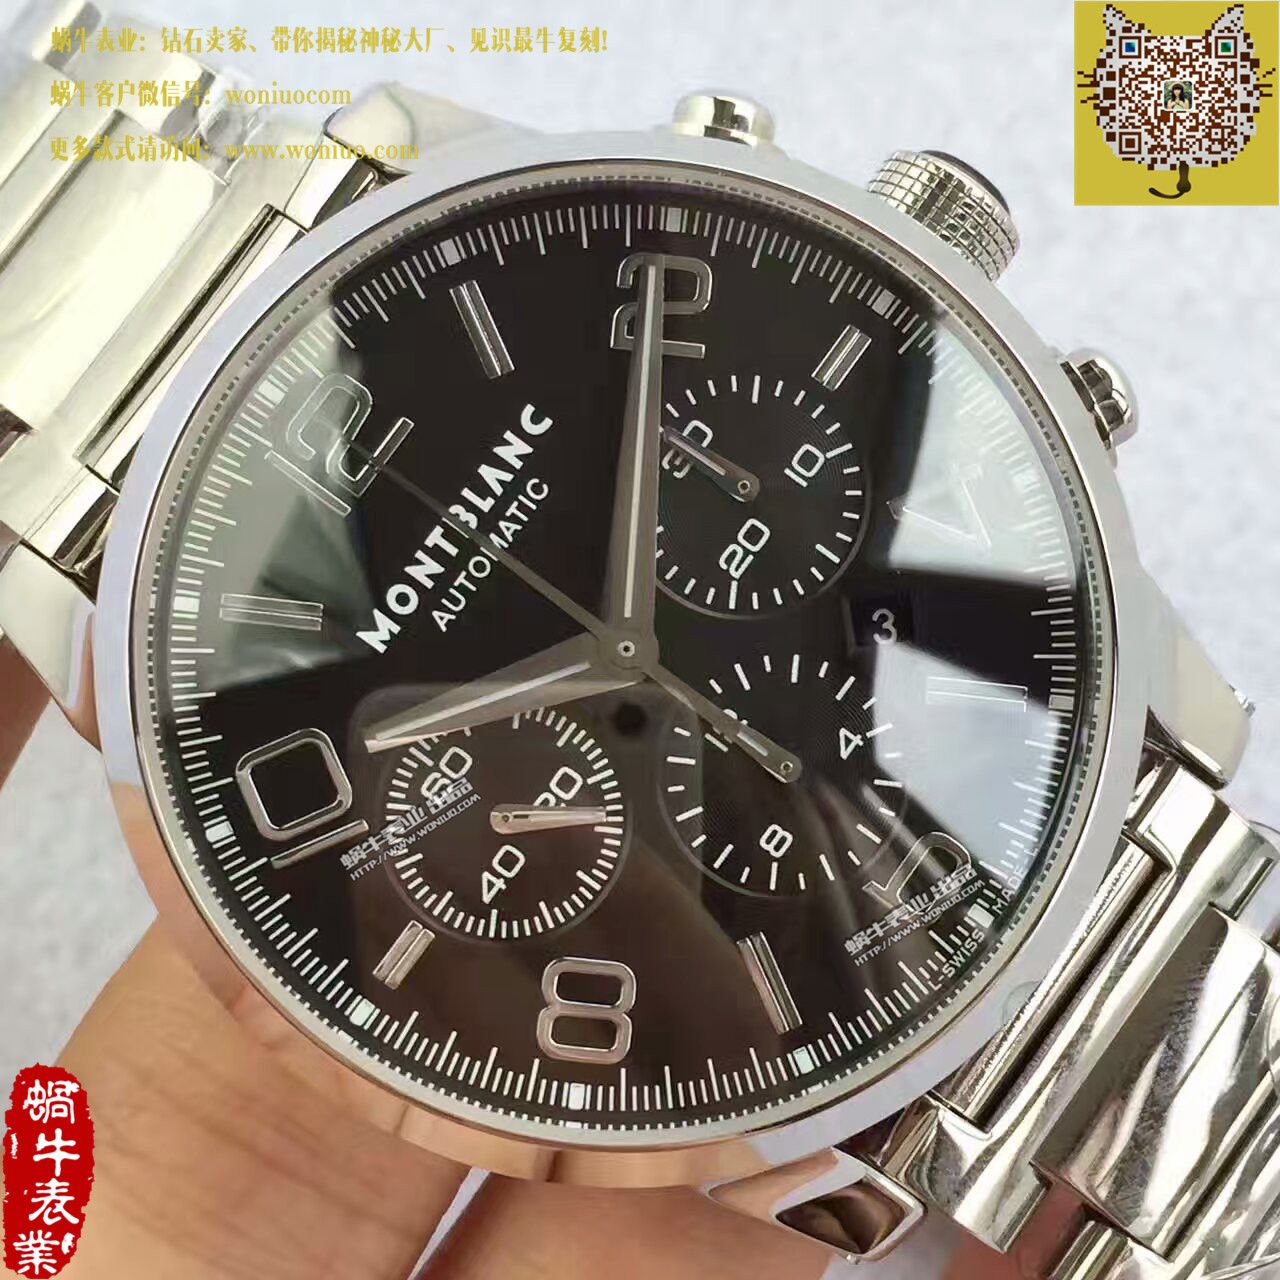 【台湾厂一比一超A高仿手表】Montblanc万宝龙时光行者系列09668腕表 